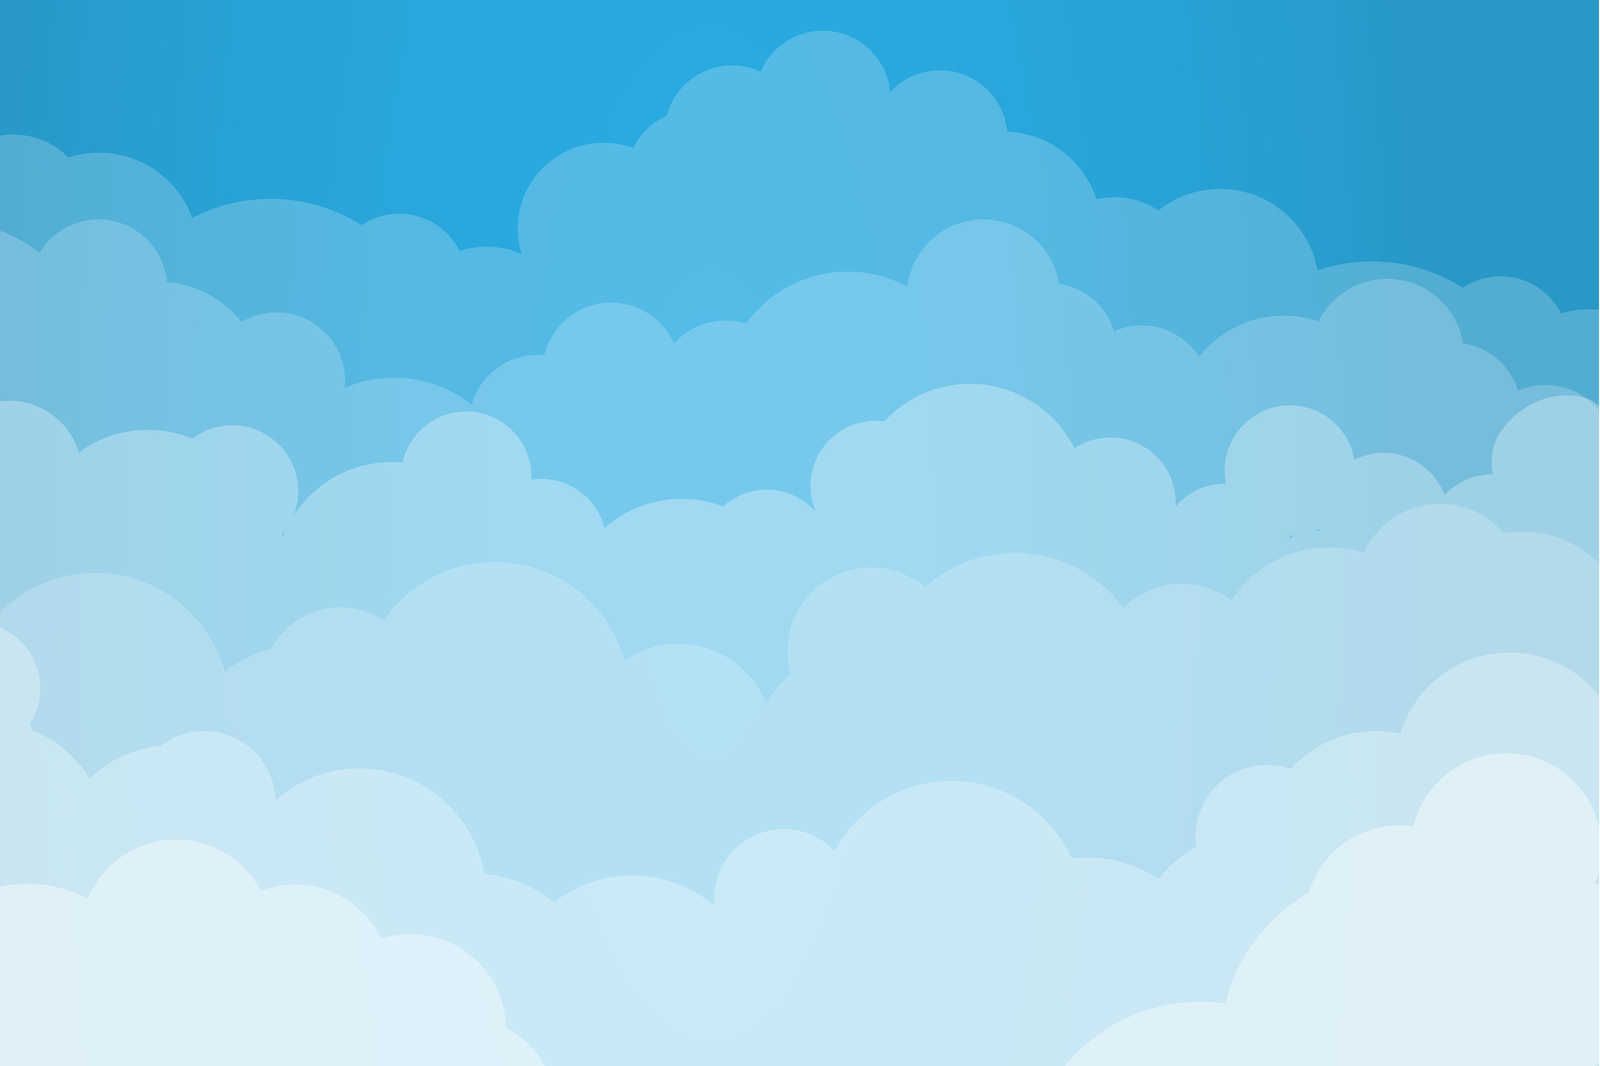             Lienzo Cielo con nubes en estilo cómic - 90 cm x 60 cm
        